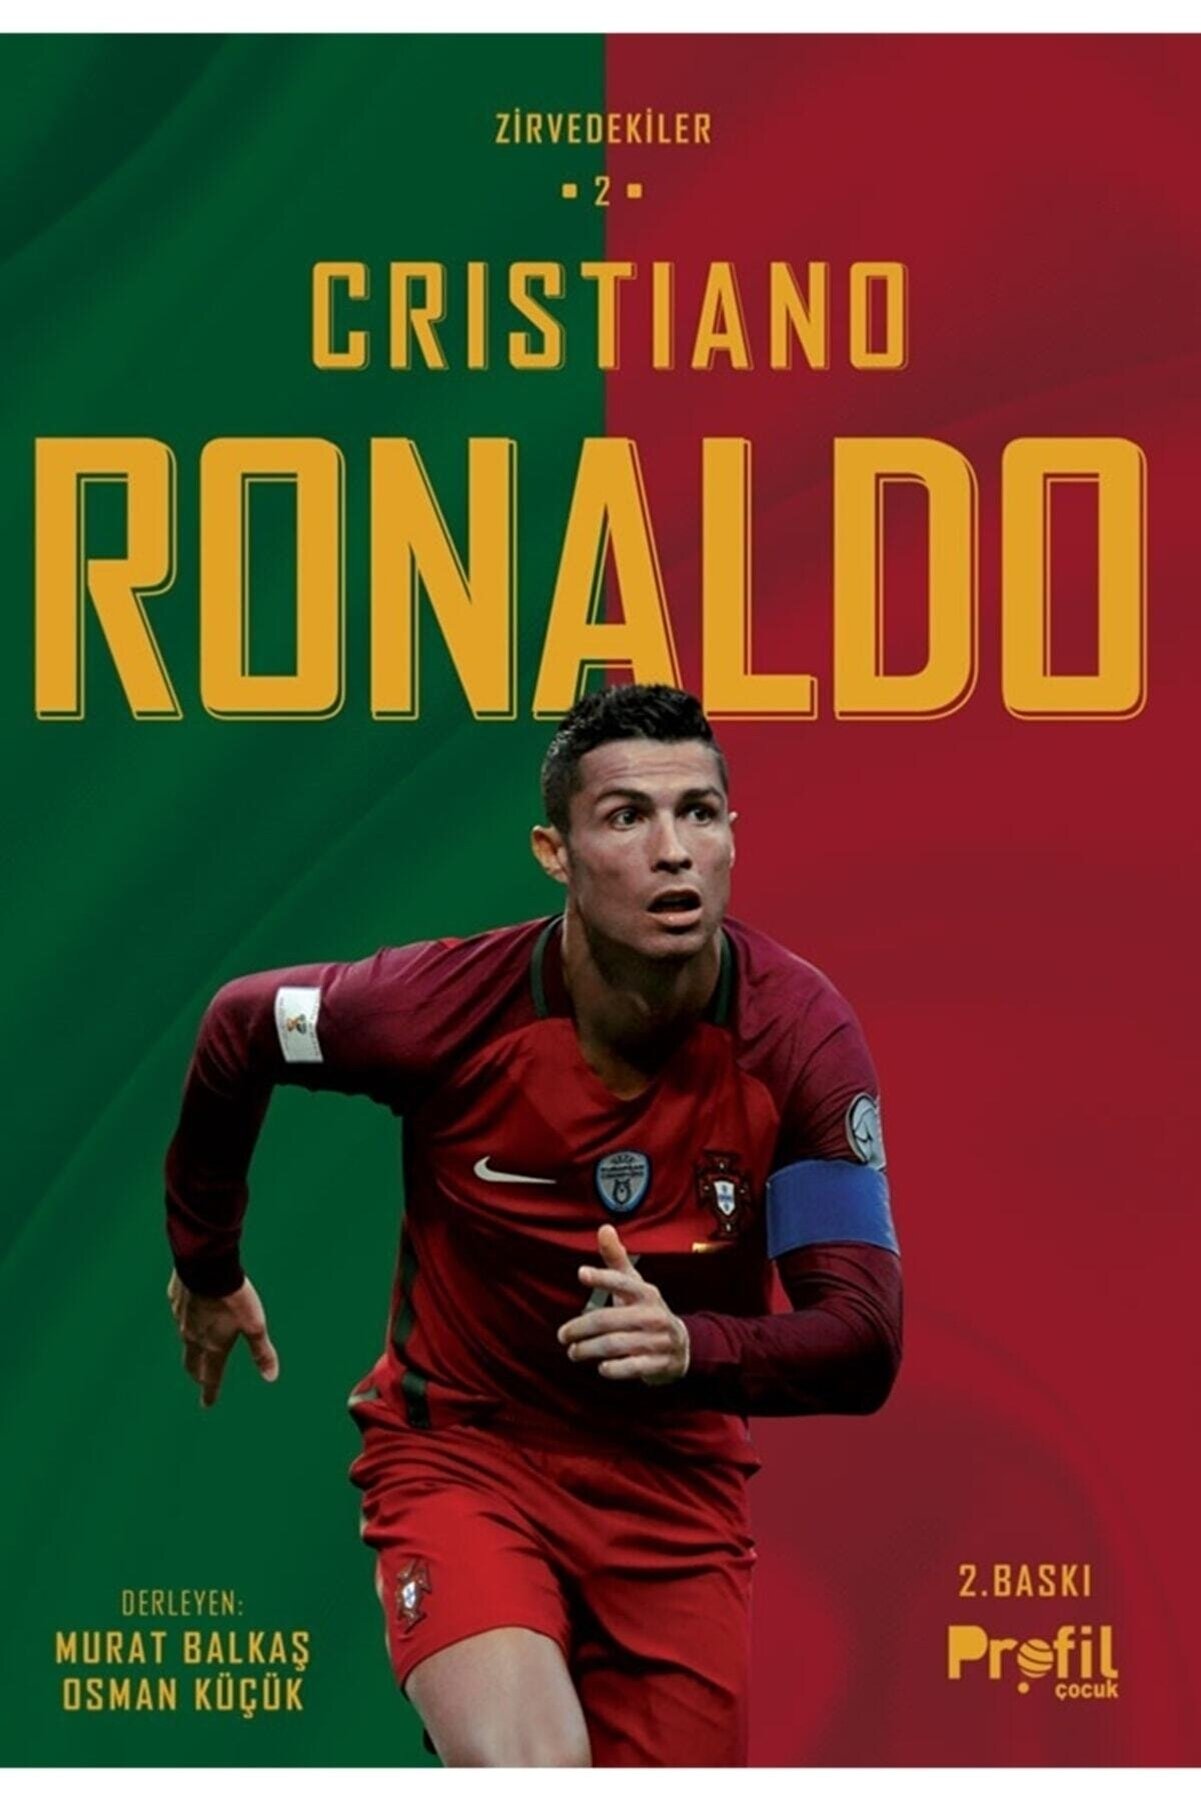 Profil Kitap Cristiano Ronaldo / Zirvedekiler 2 Murat Balkaş Sü